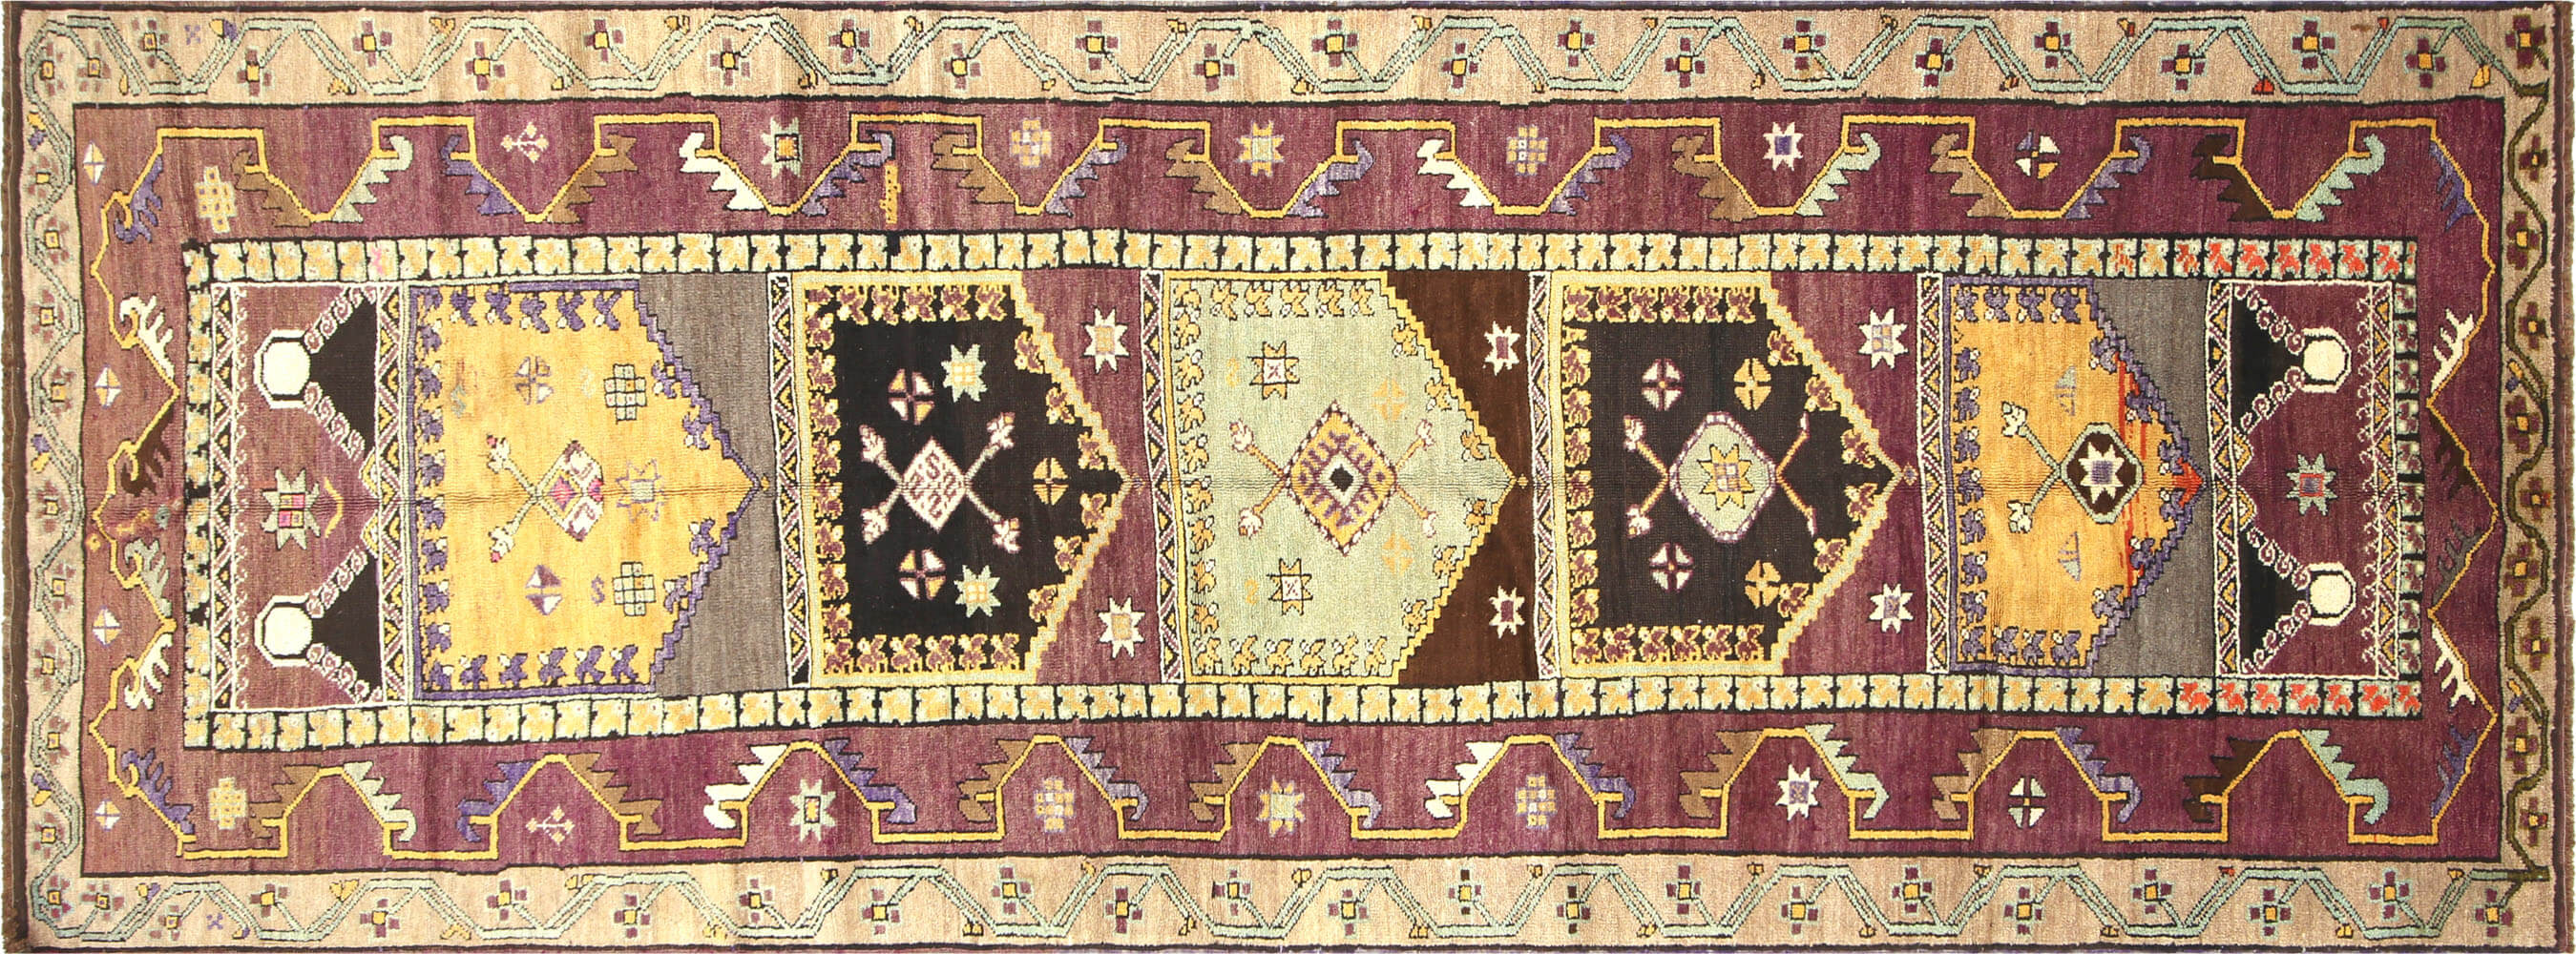 Vintage Turkish Oushak Carpet - 4'6" x 12'